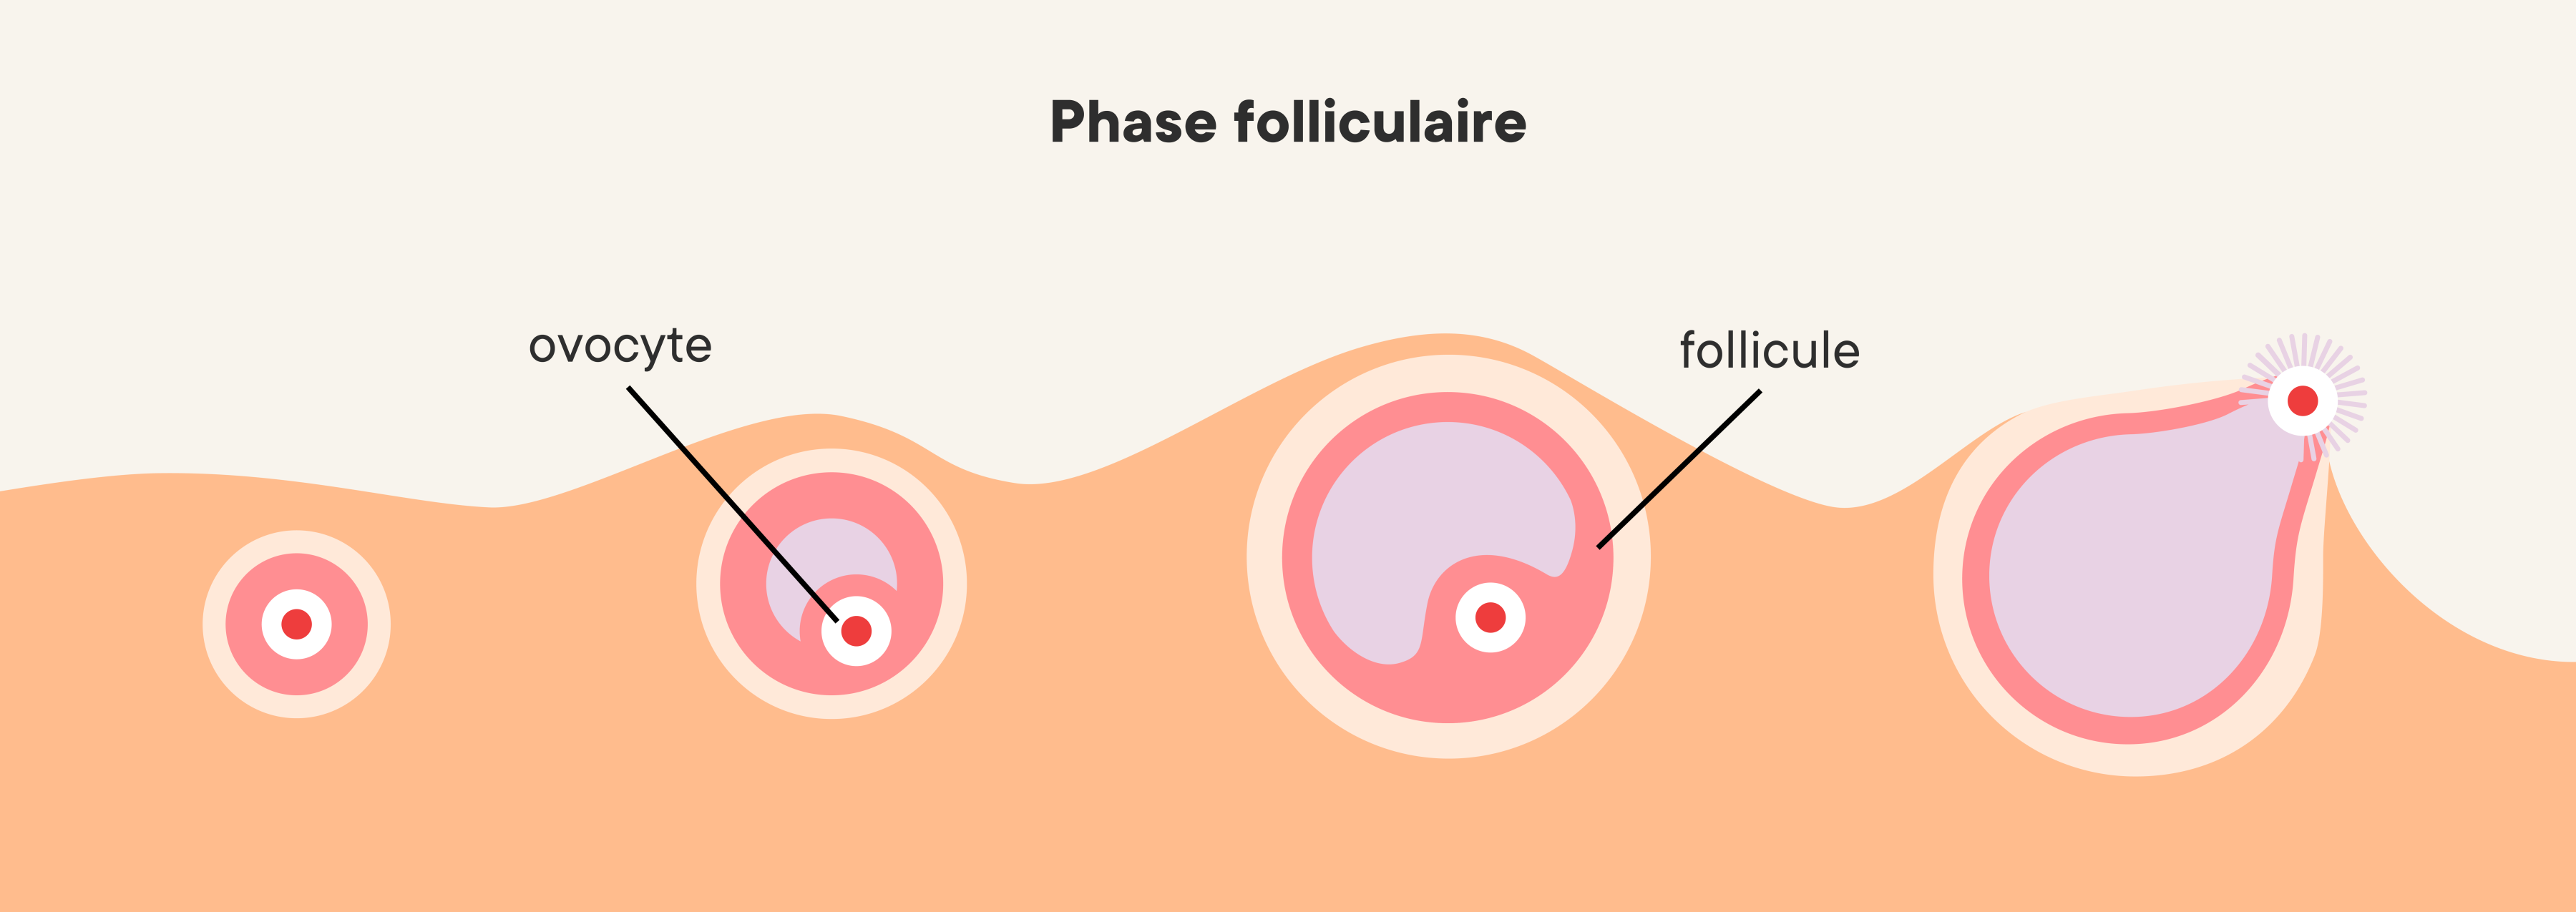 Illustration de la progression de la phase folliculaire dans les ovaires